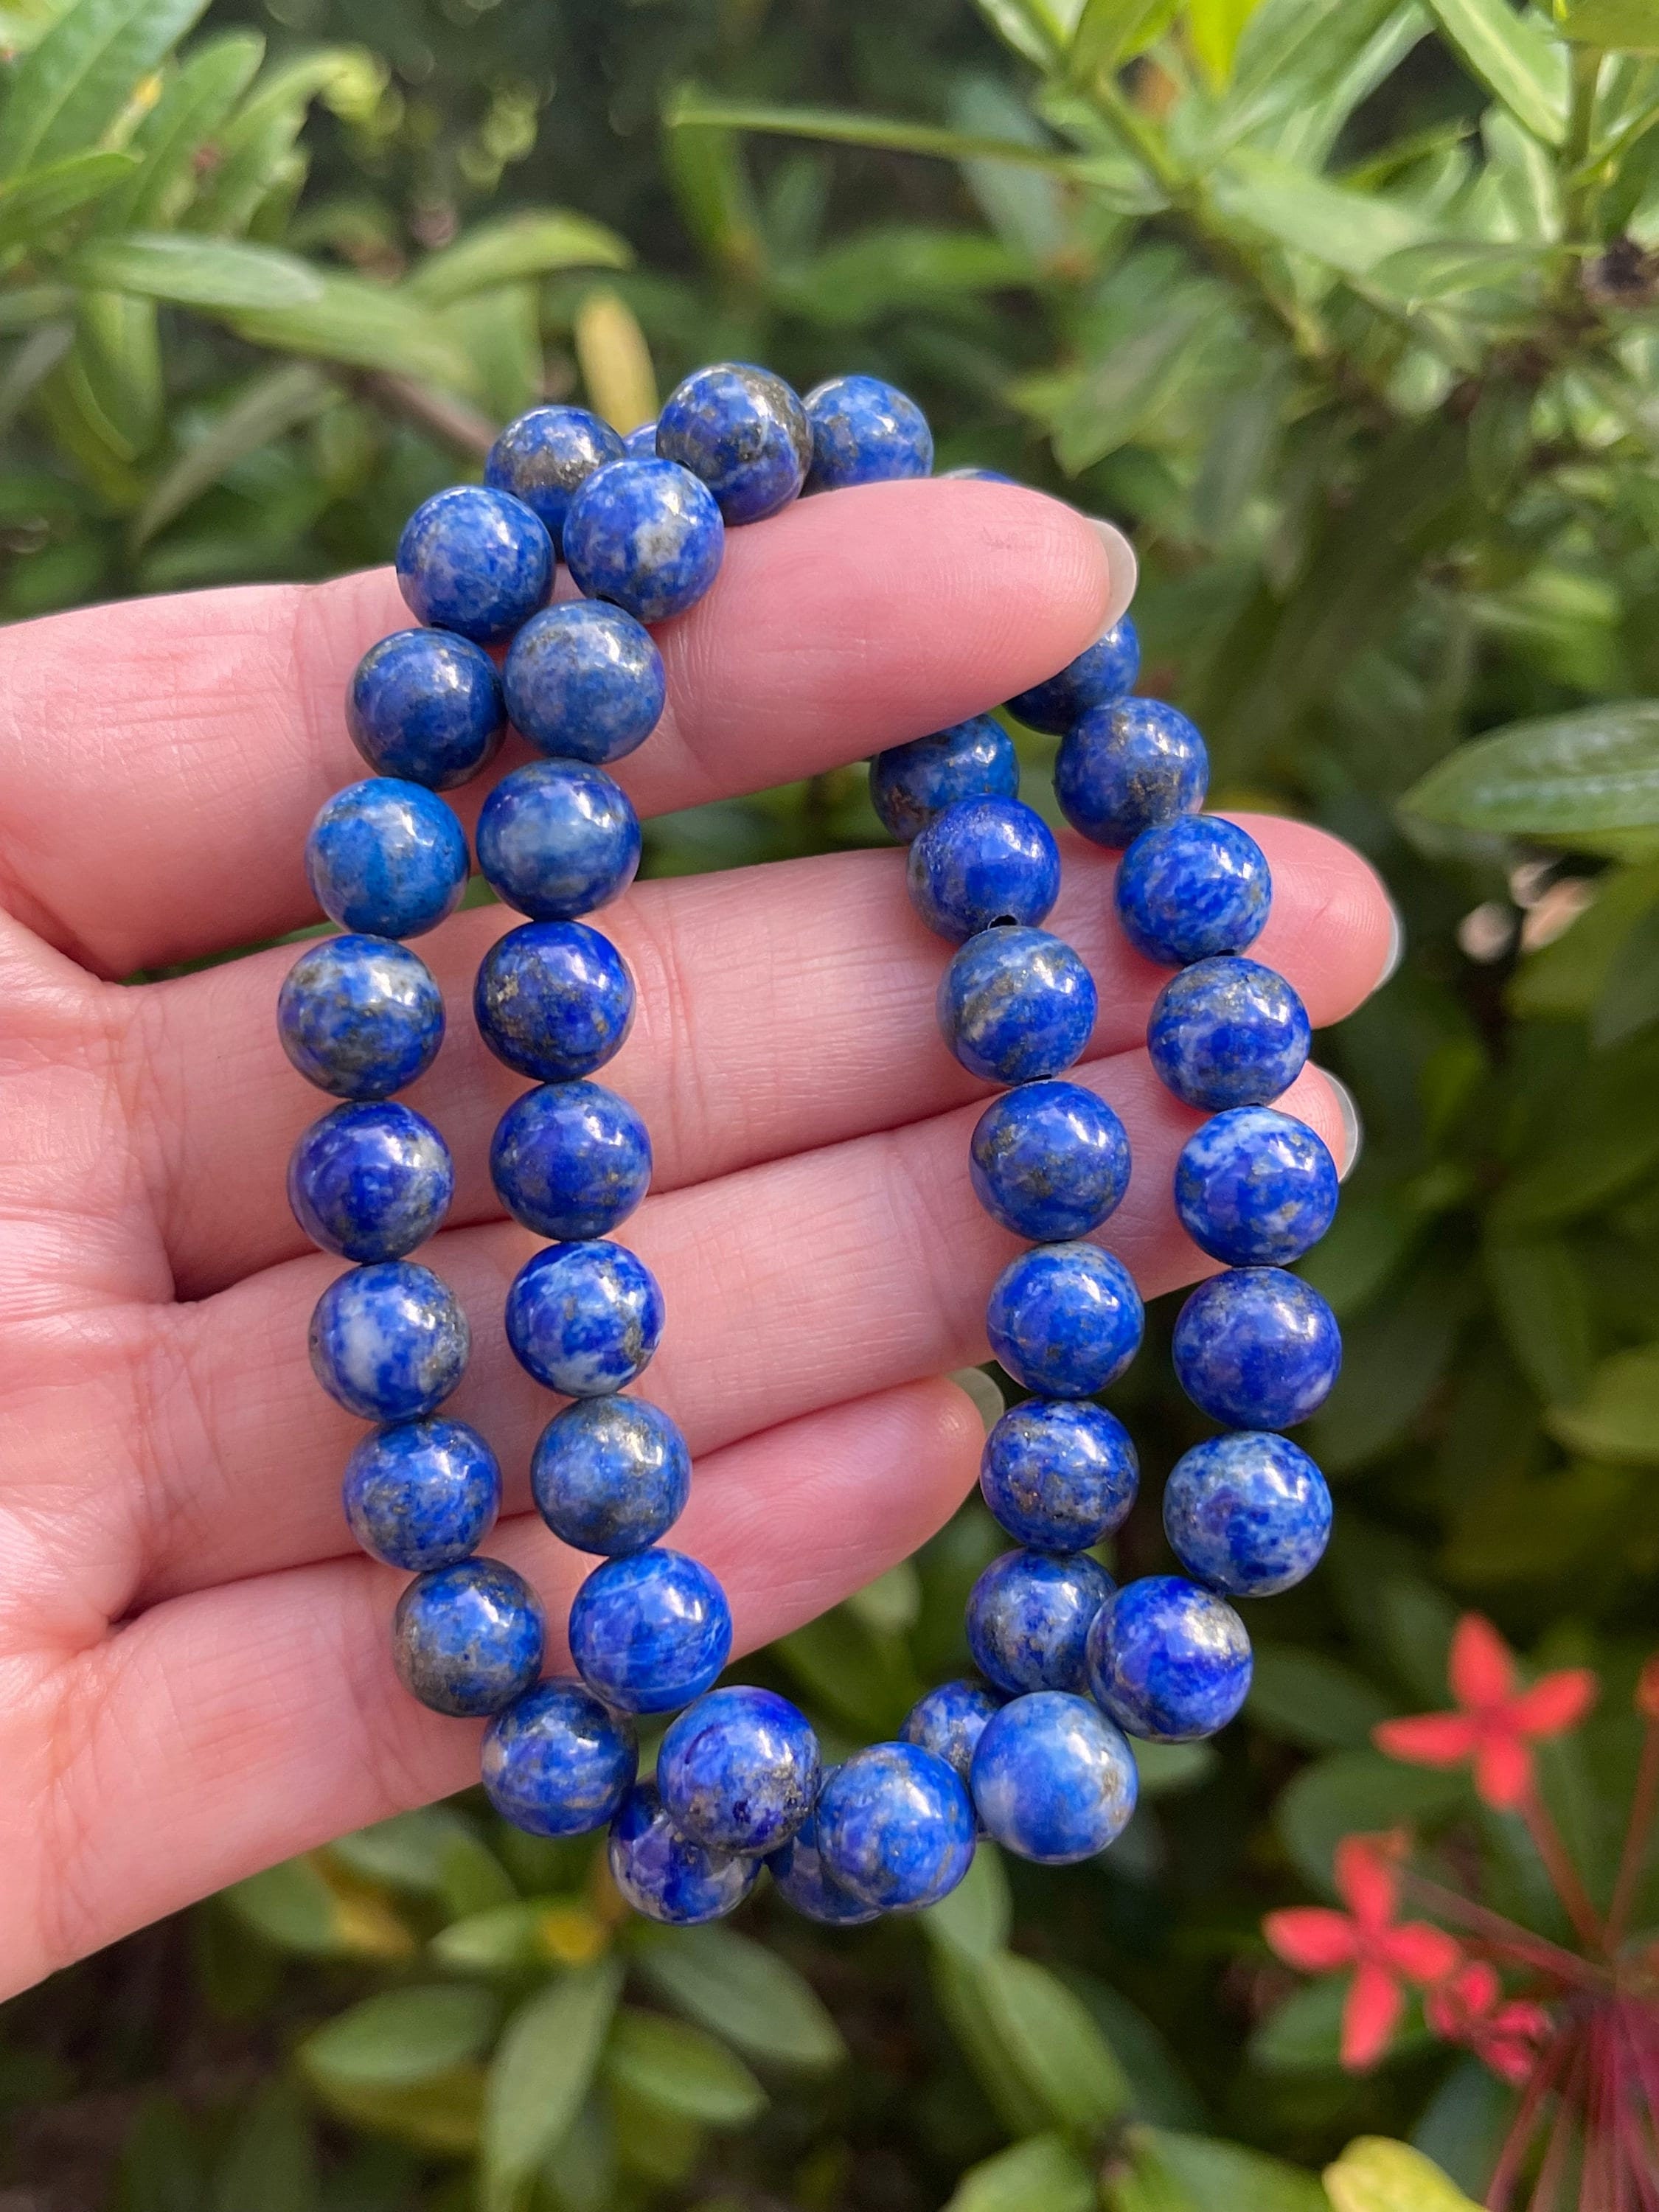 Bracelet perles Lapis lazuli 2mm et Argent 925 - Mia